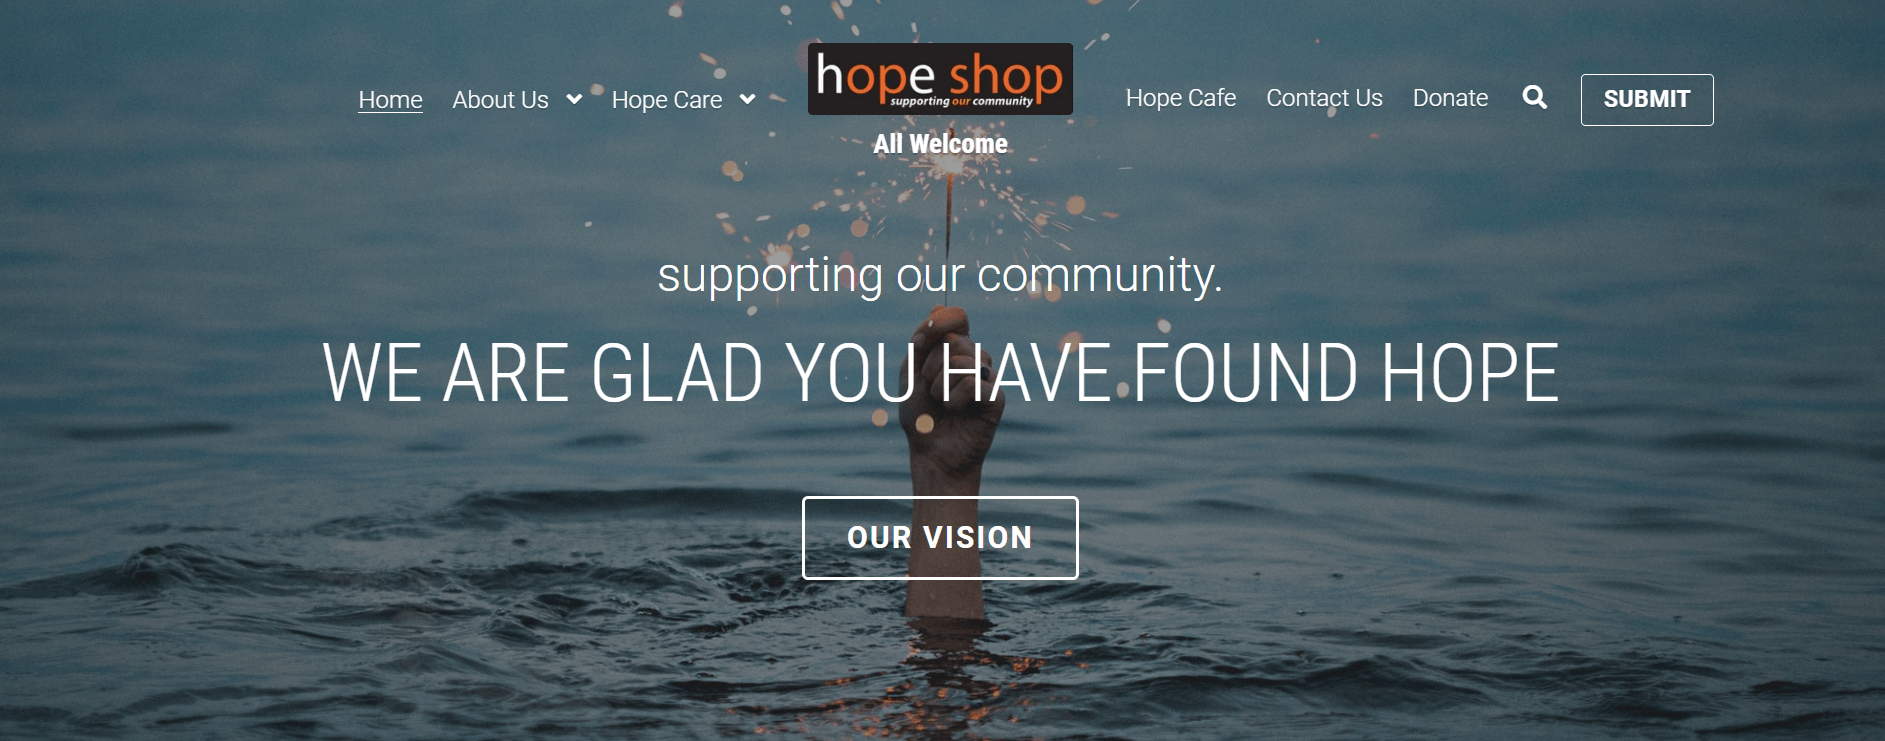 plataformas para criar sites gratis hope shop